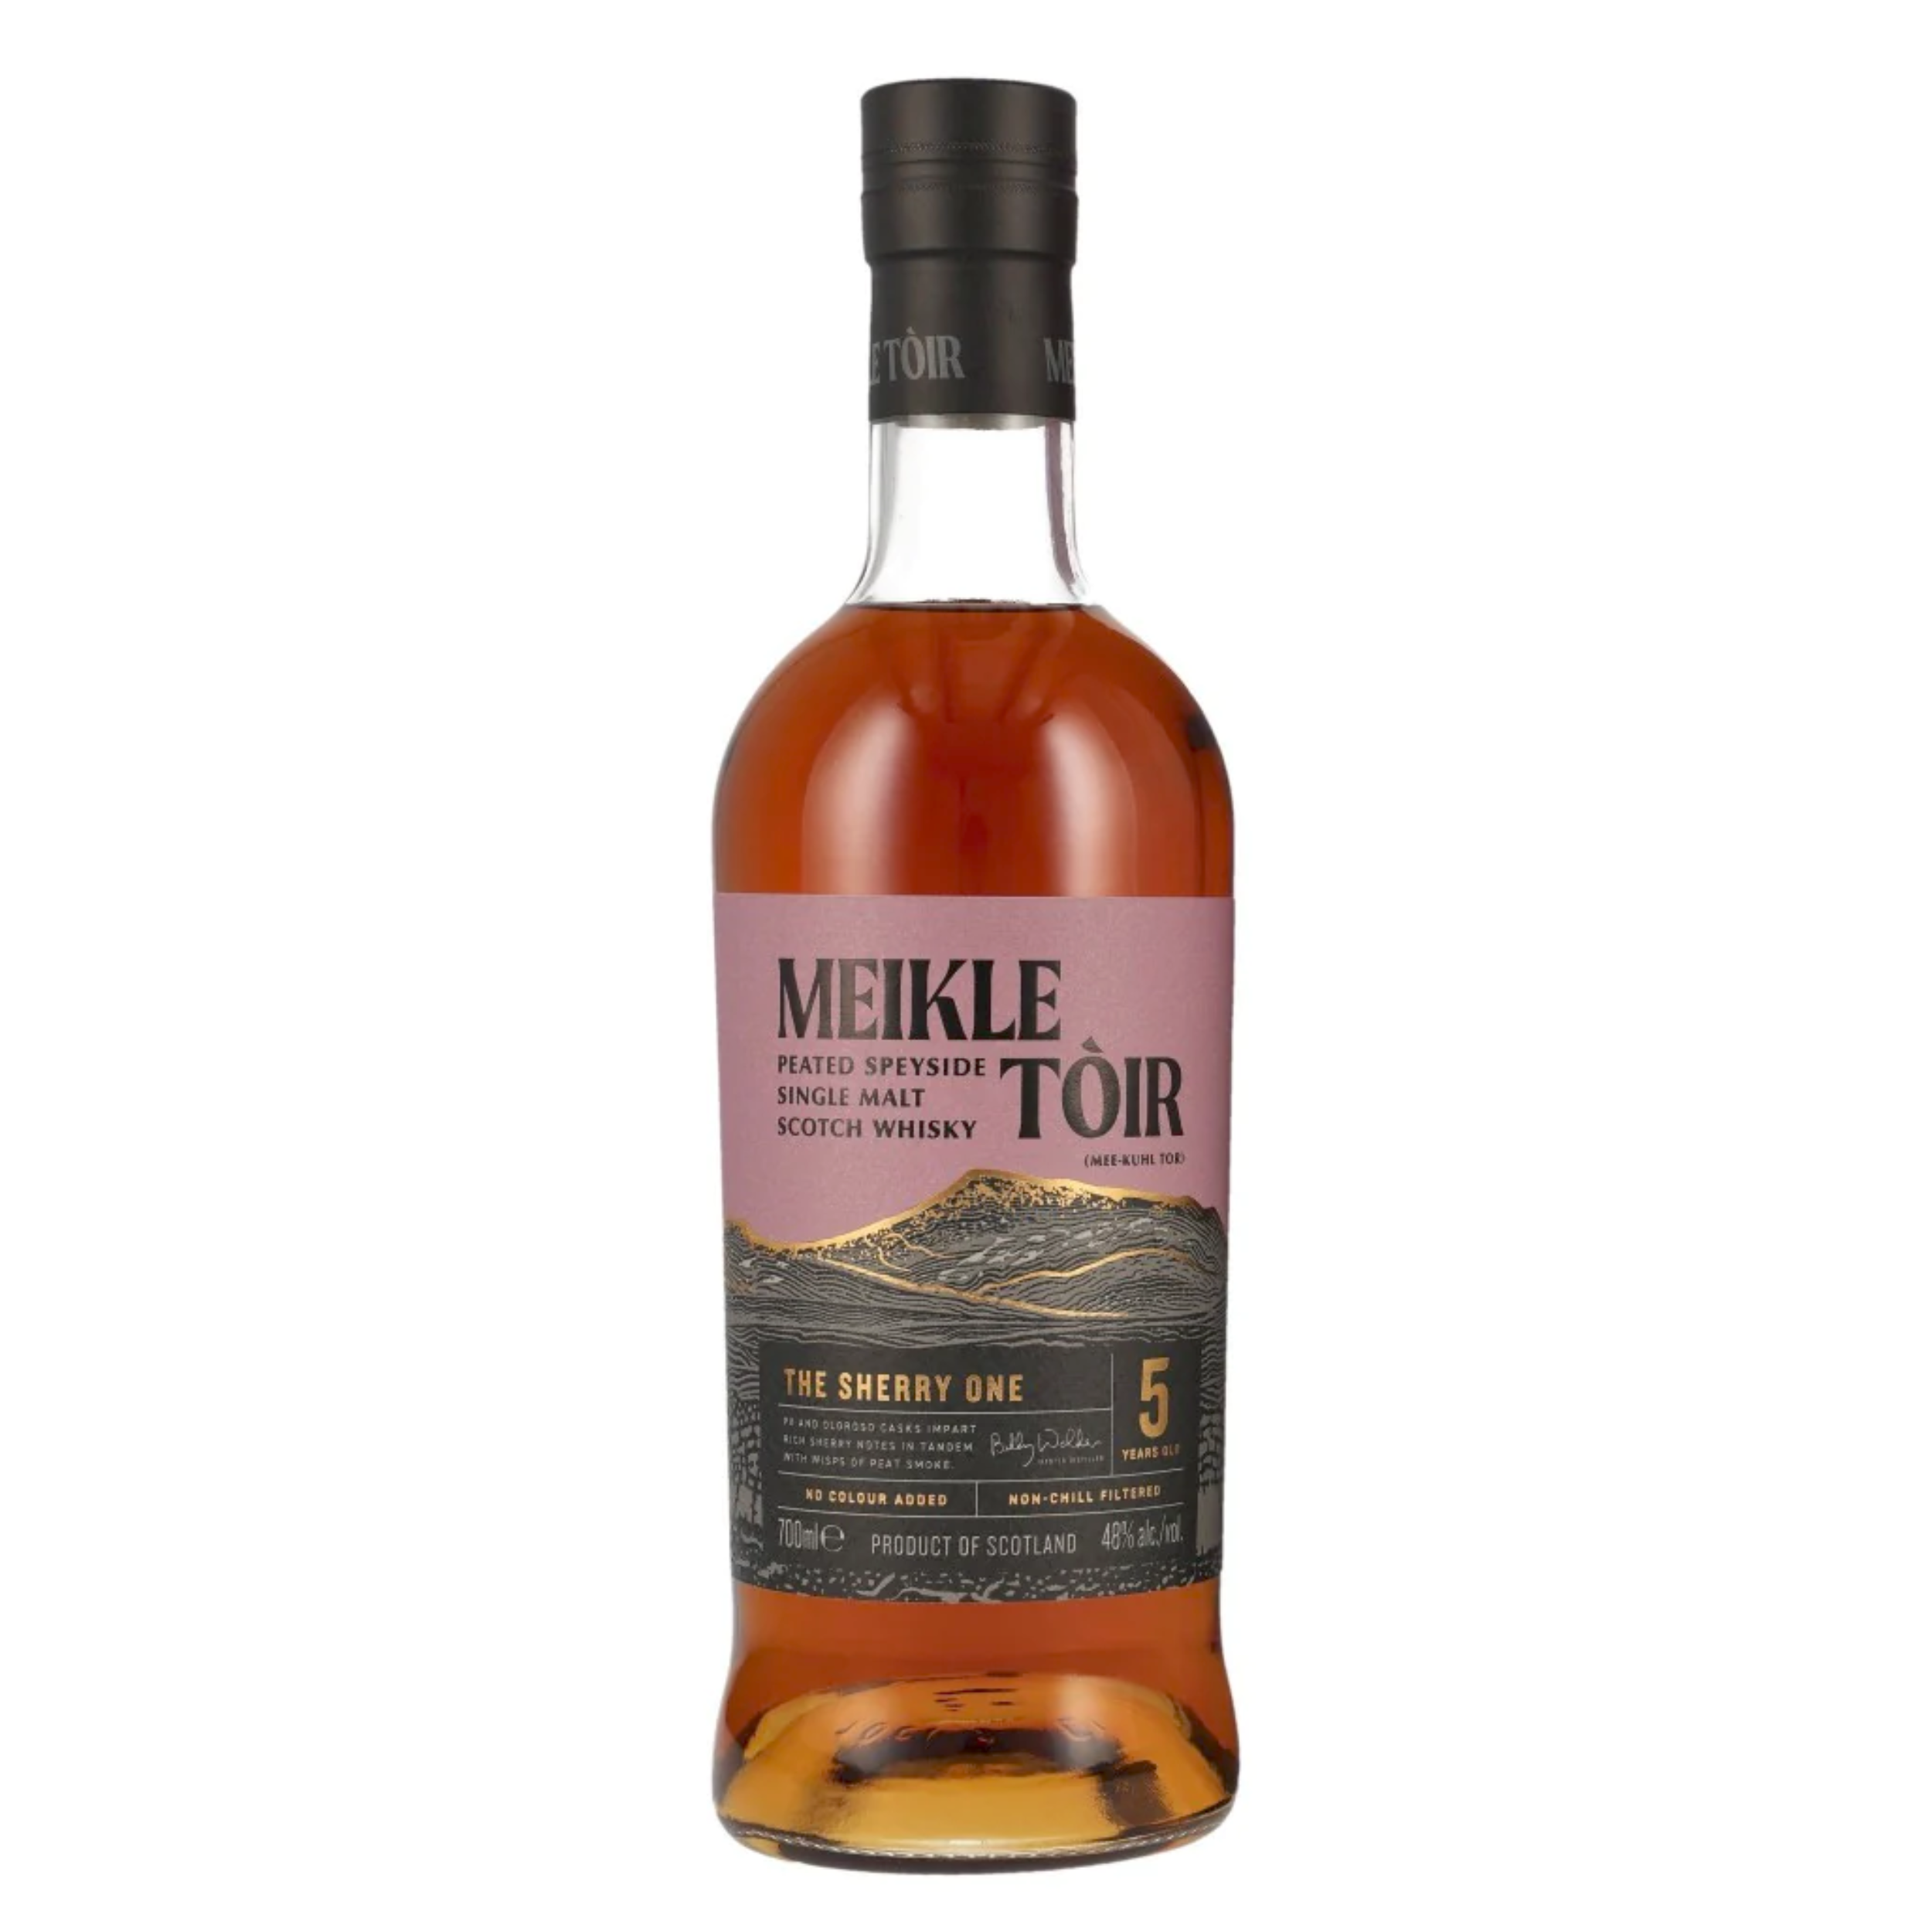 The Sherry One - Meikle Toir